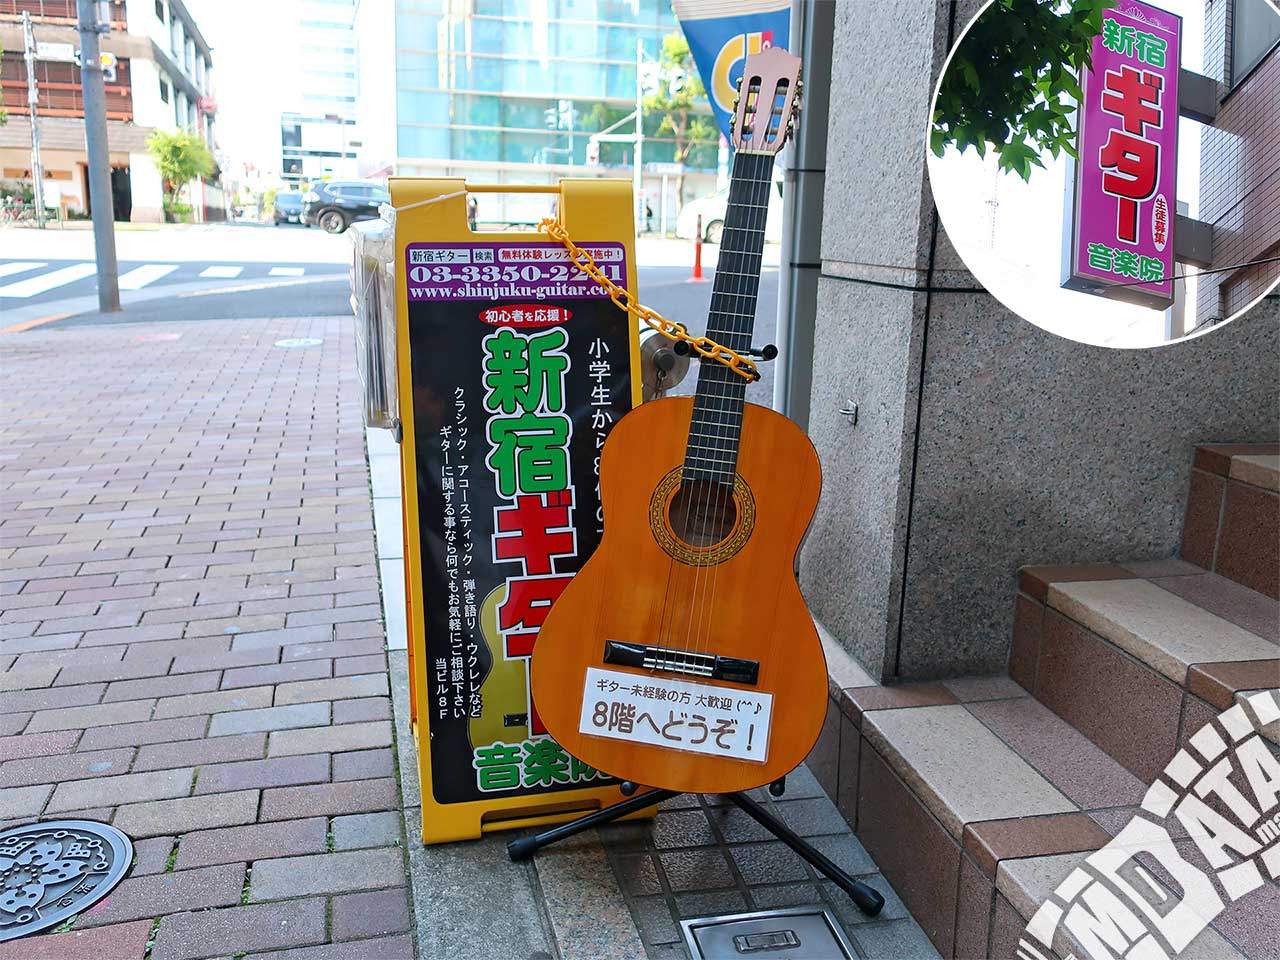 新宿ギター音楽院の写真 撮影日:2019/5/29 Photo taken on 2019/05/29